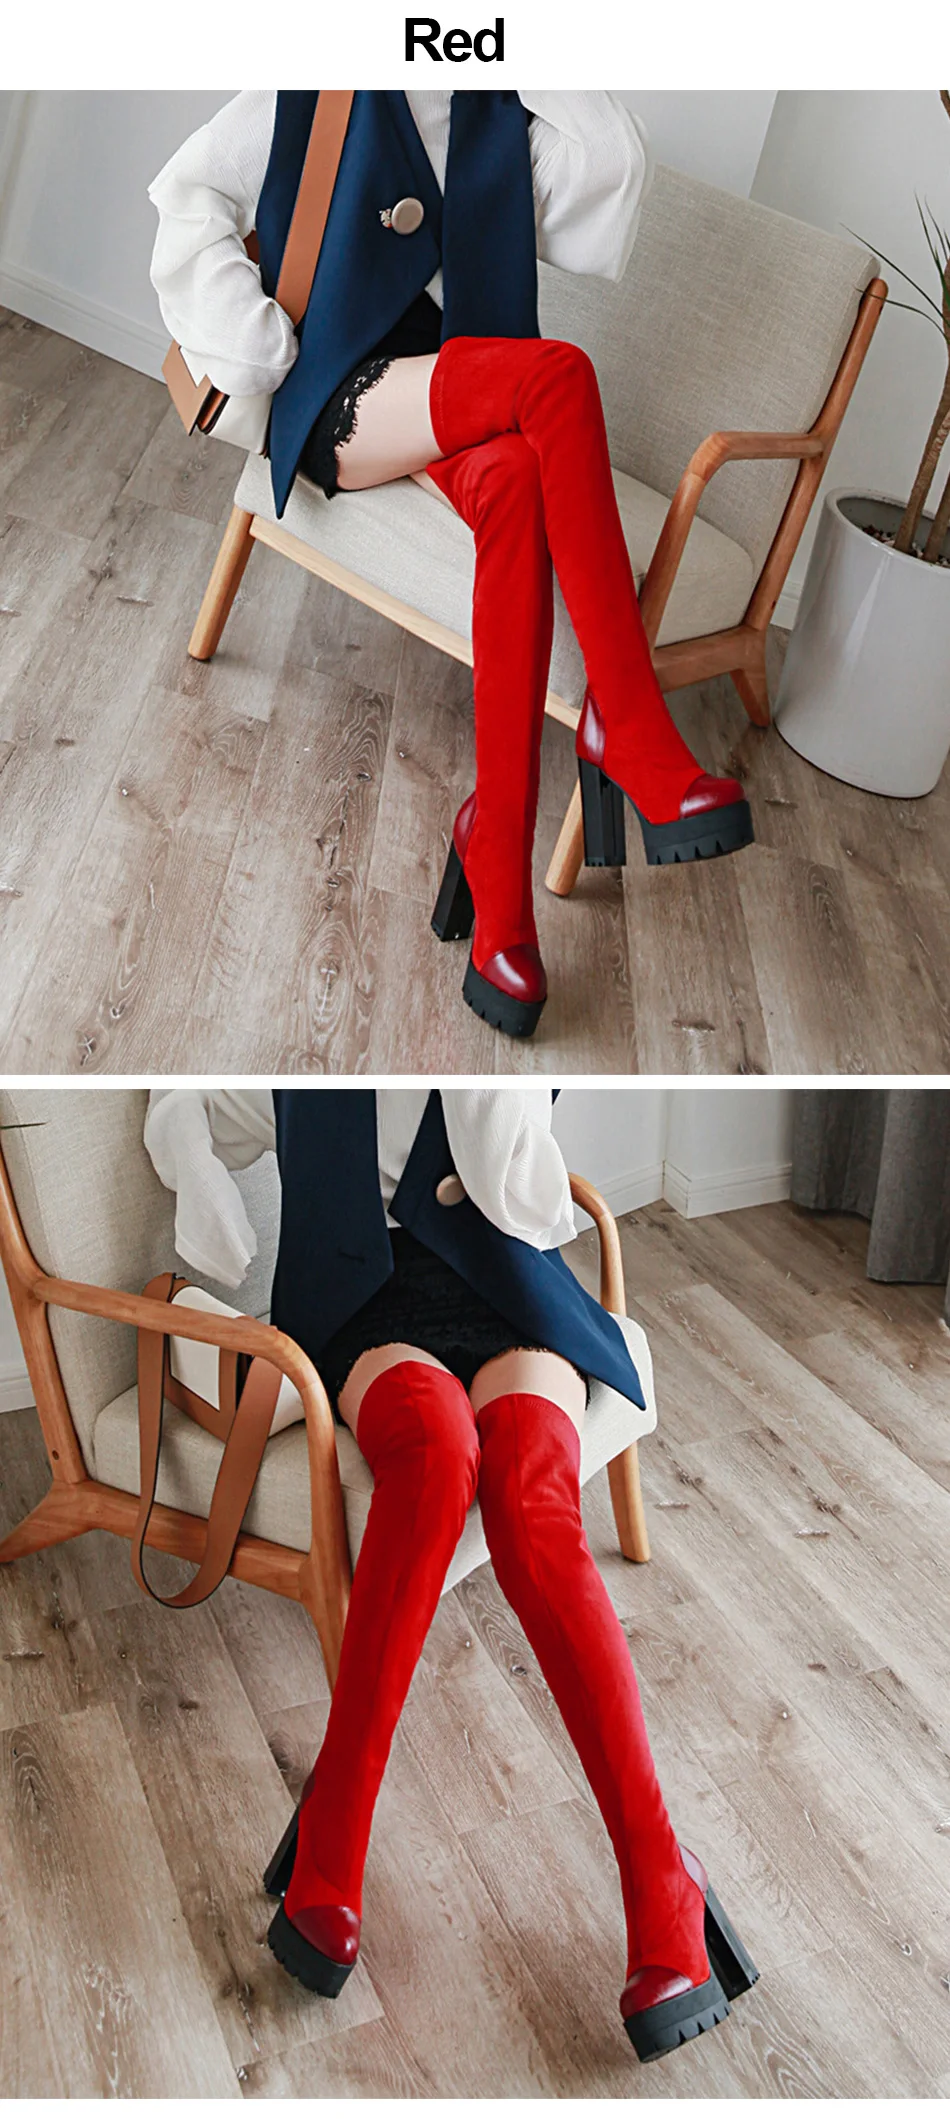 Gdgydh/модные женские зимние сапоги до бедра Замшевые женские сапоги выше колена на высоком каблуке из флока; Цвет черный, красный; высокие сапоги Elatic